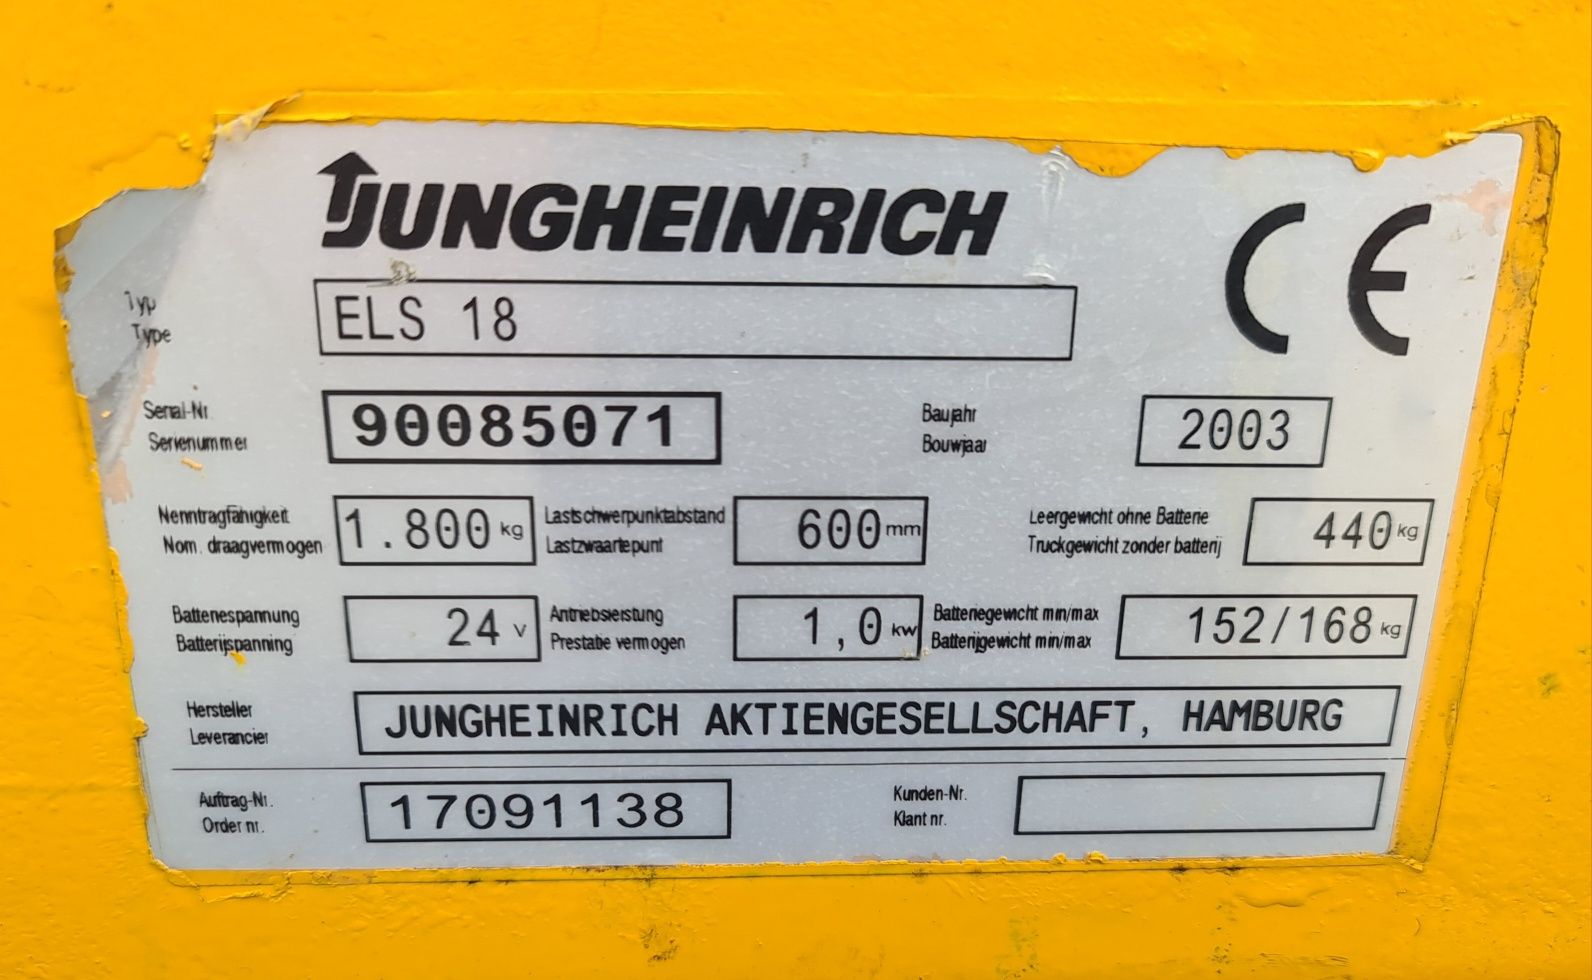 Transpalet liza electrica Jungheinrich ELS 18 , capacitate 1800 kg